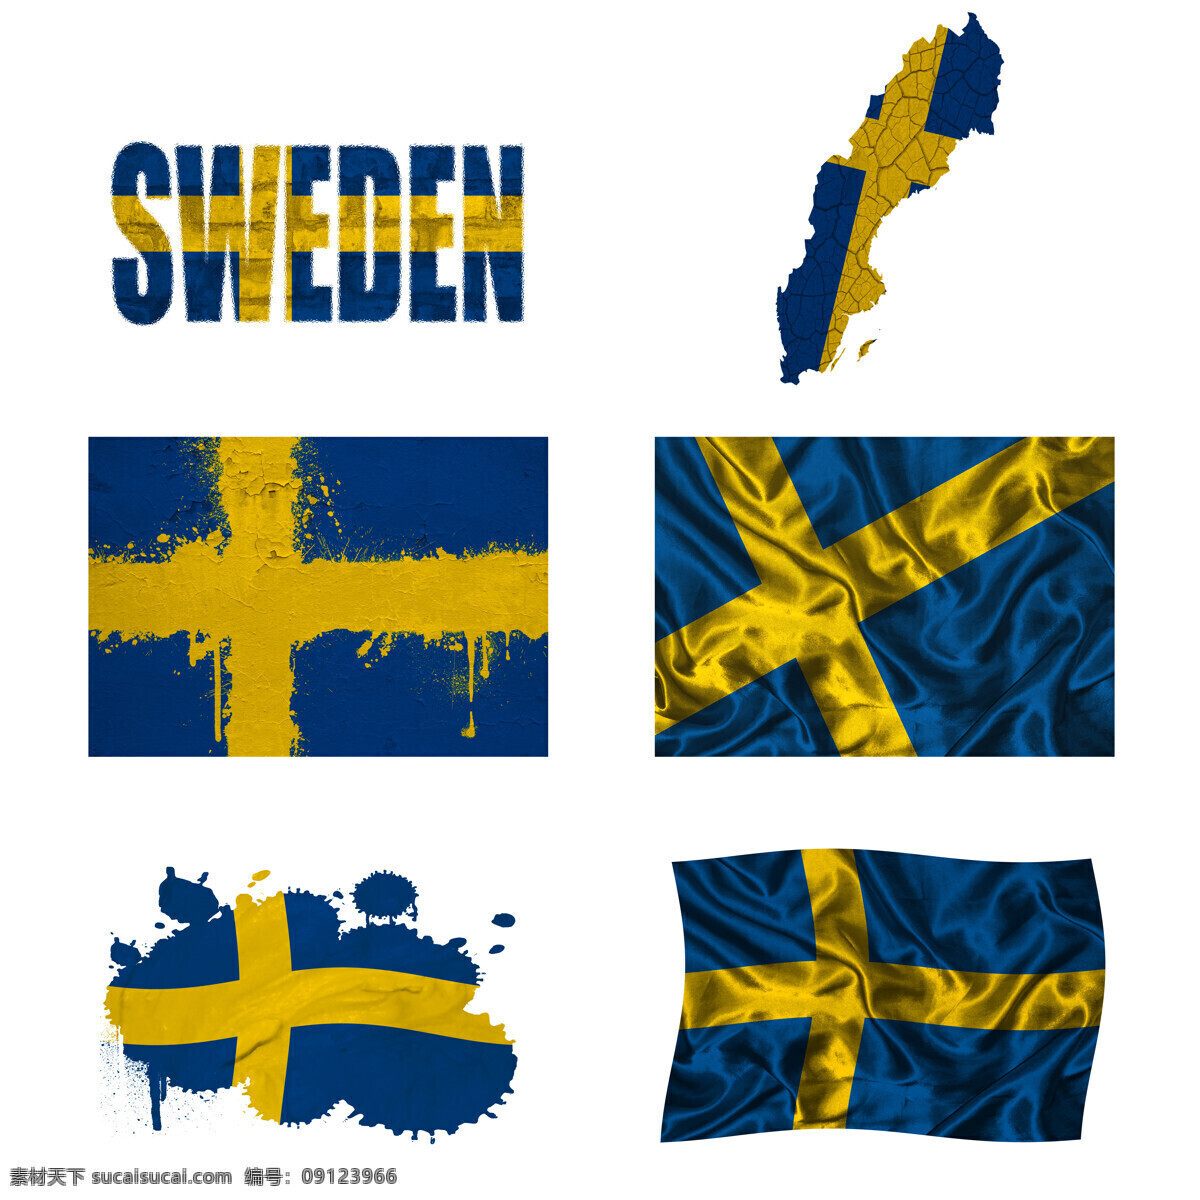 瑞典国旗 地图 旗帜 国旗图案 其他类别 生活百科 白色